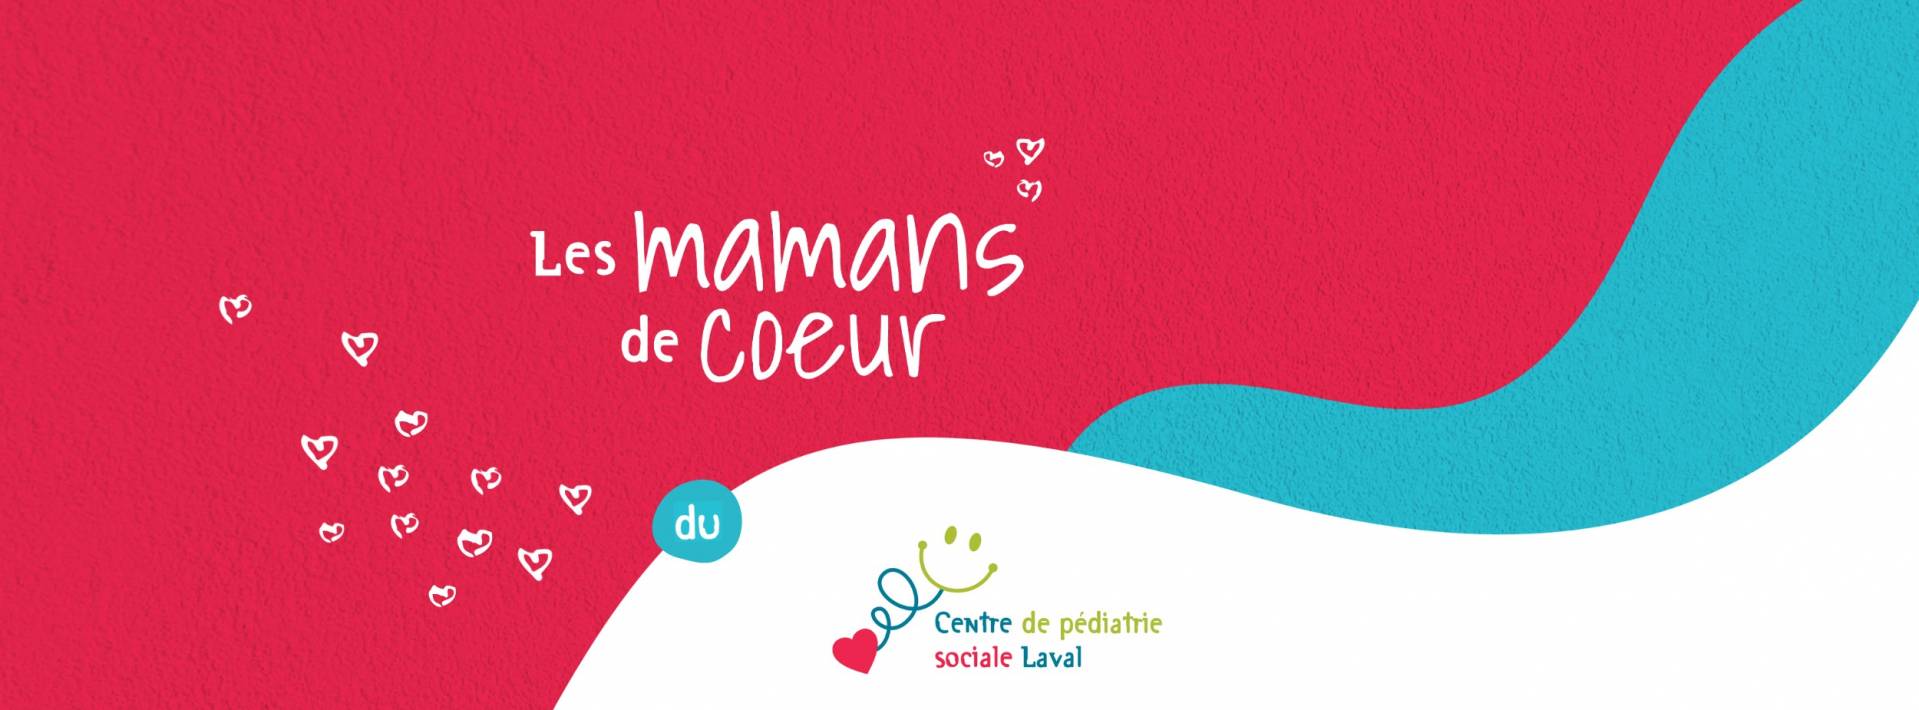 mamans-de-coeur-1920x1080_uid62432b2ac968d